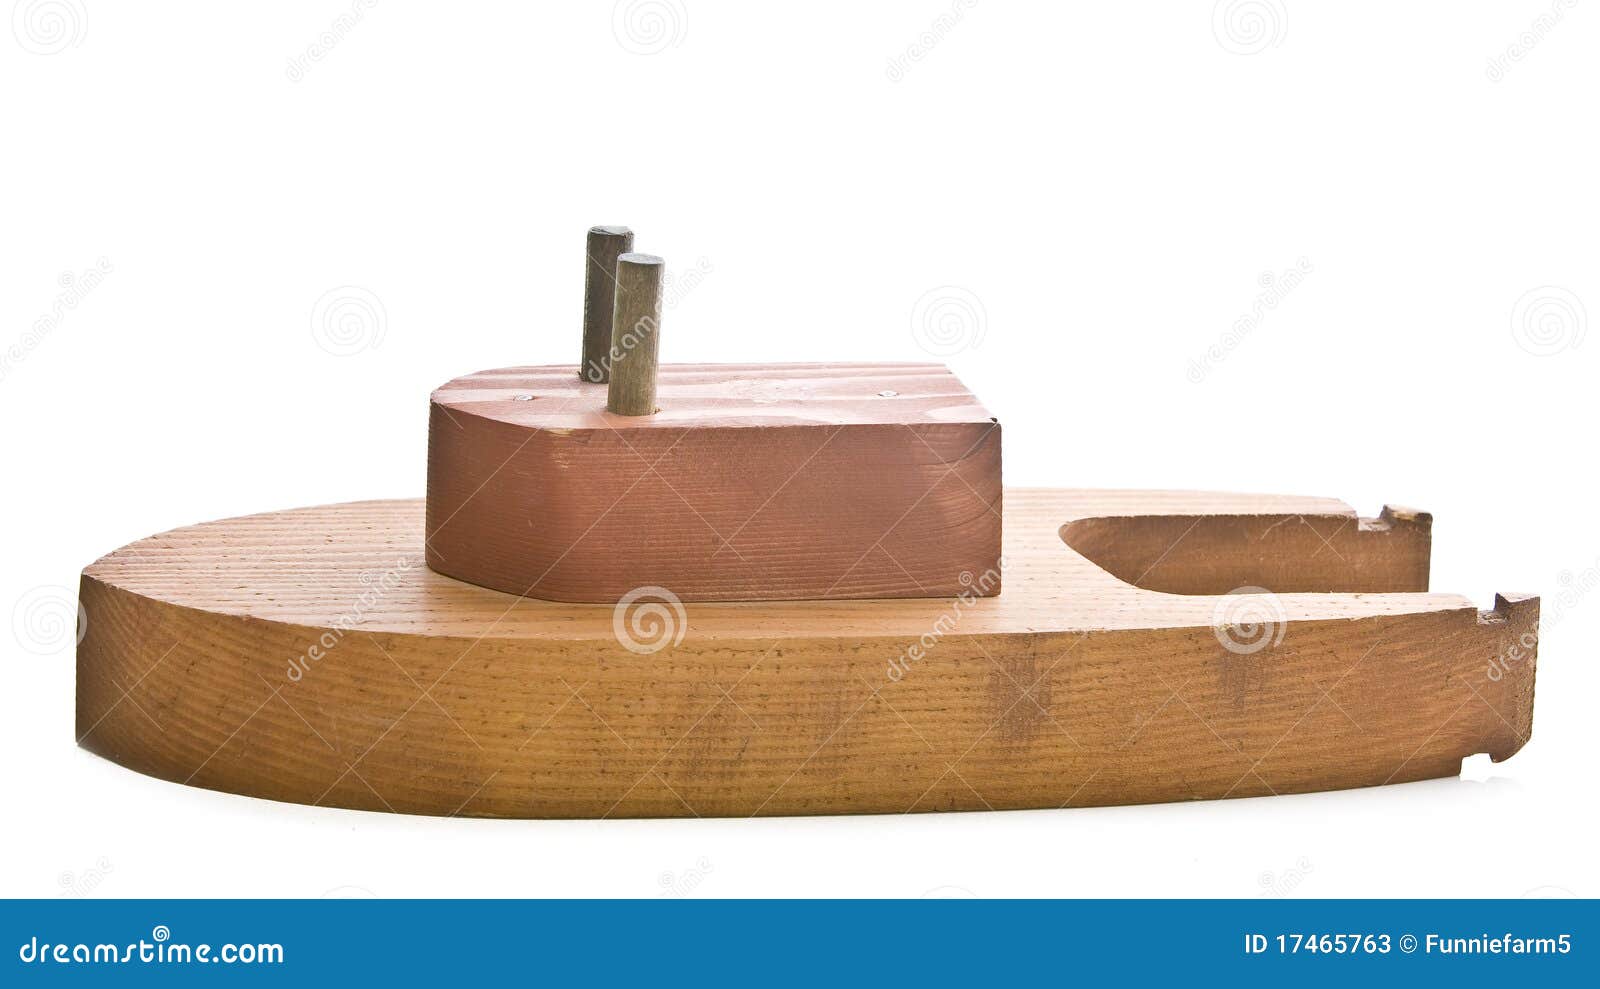 Toy wood tug boat stock image. Image of isolated, holiday ...